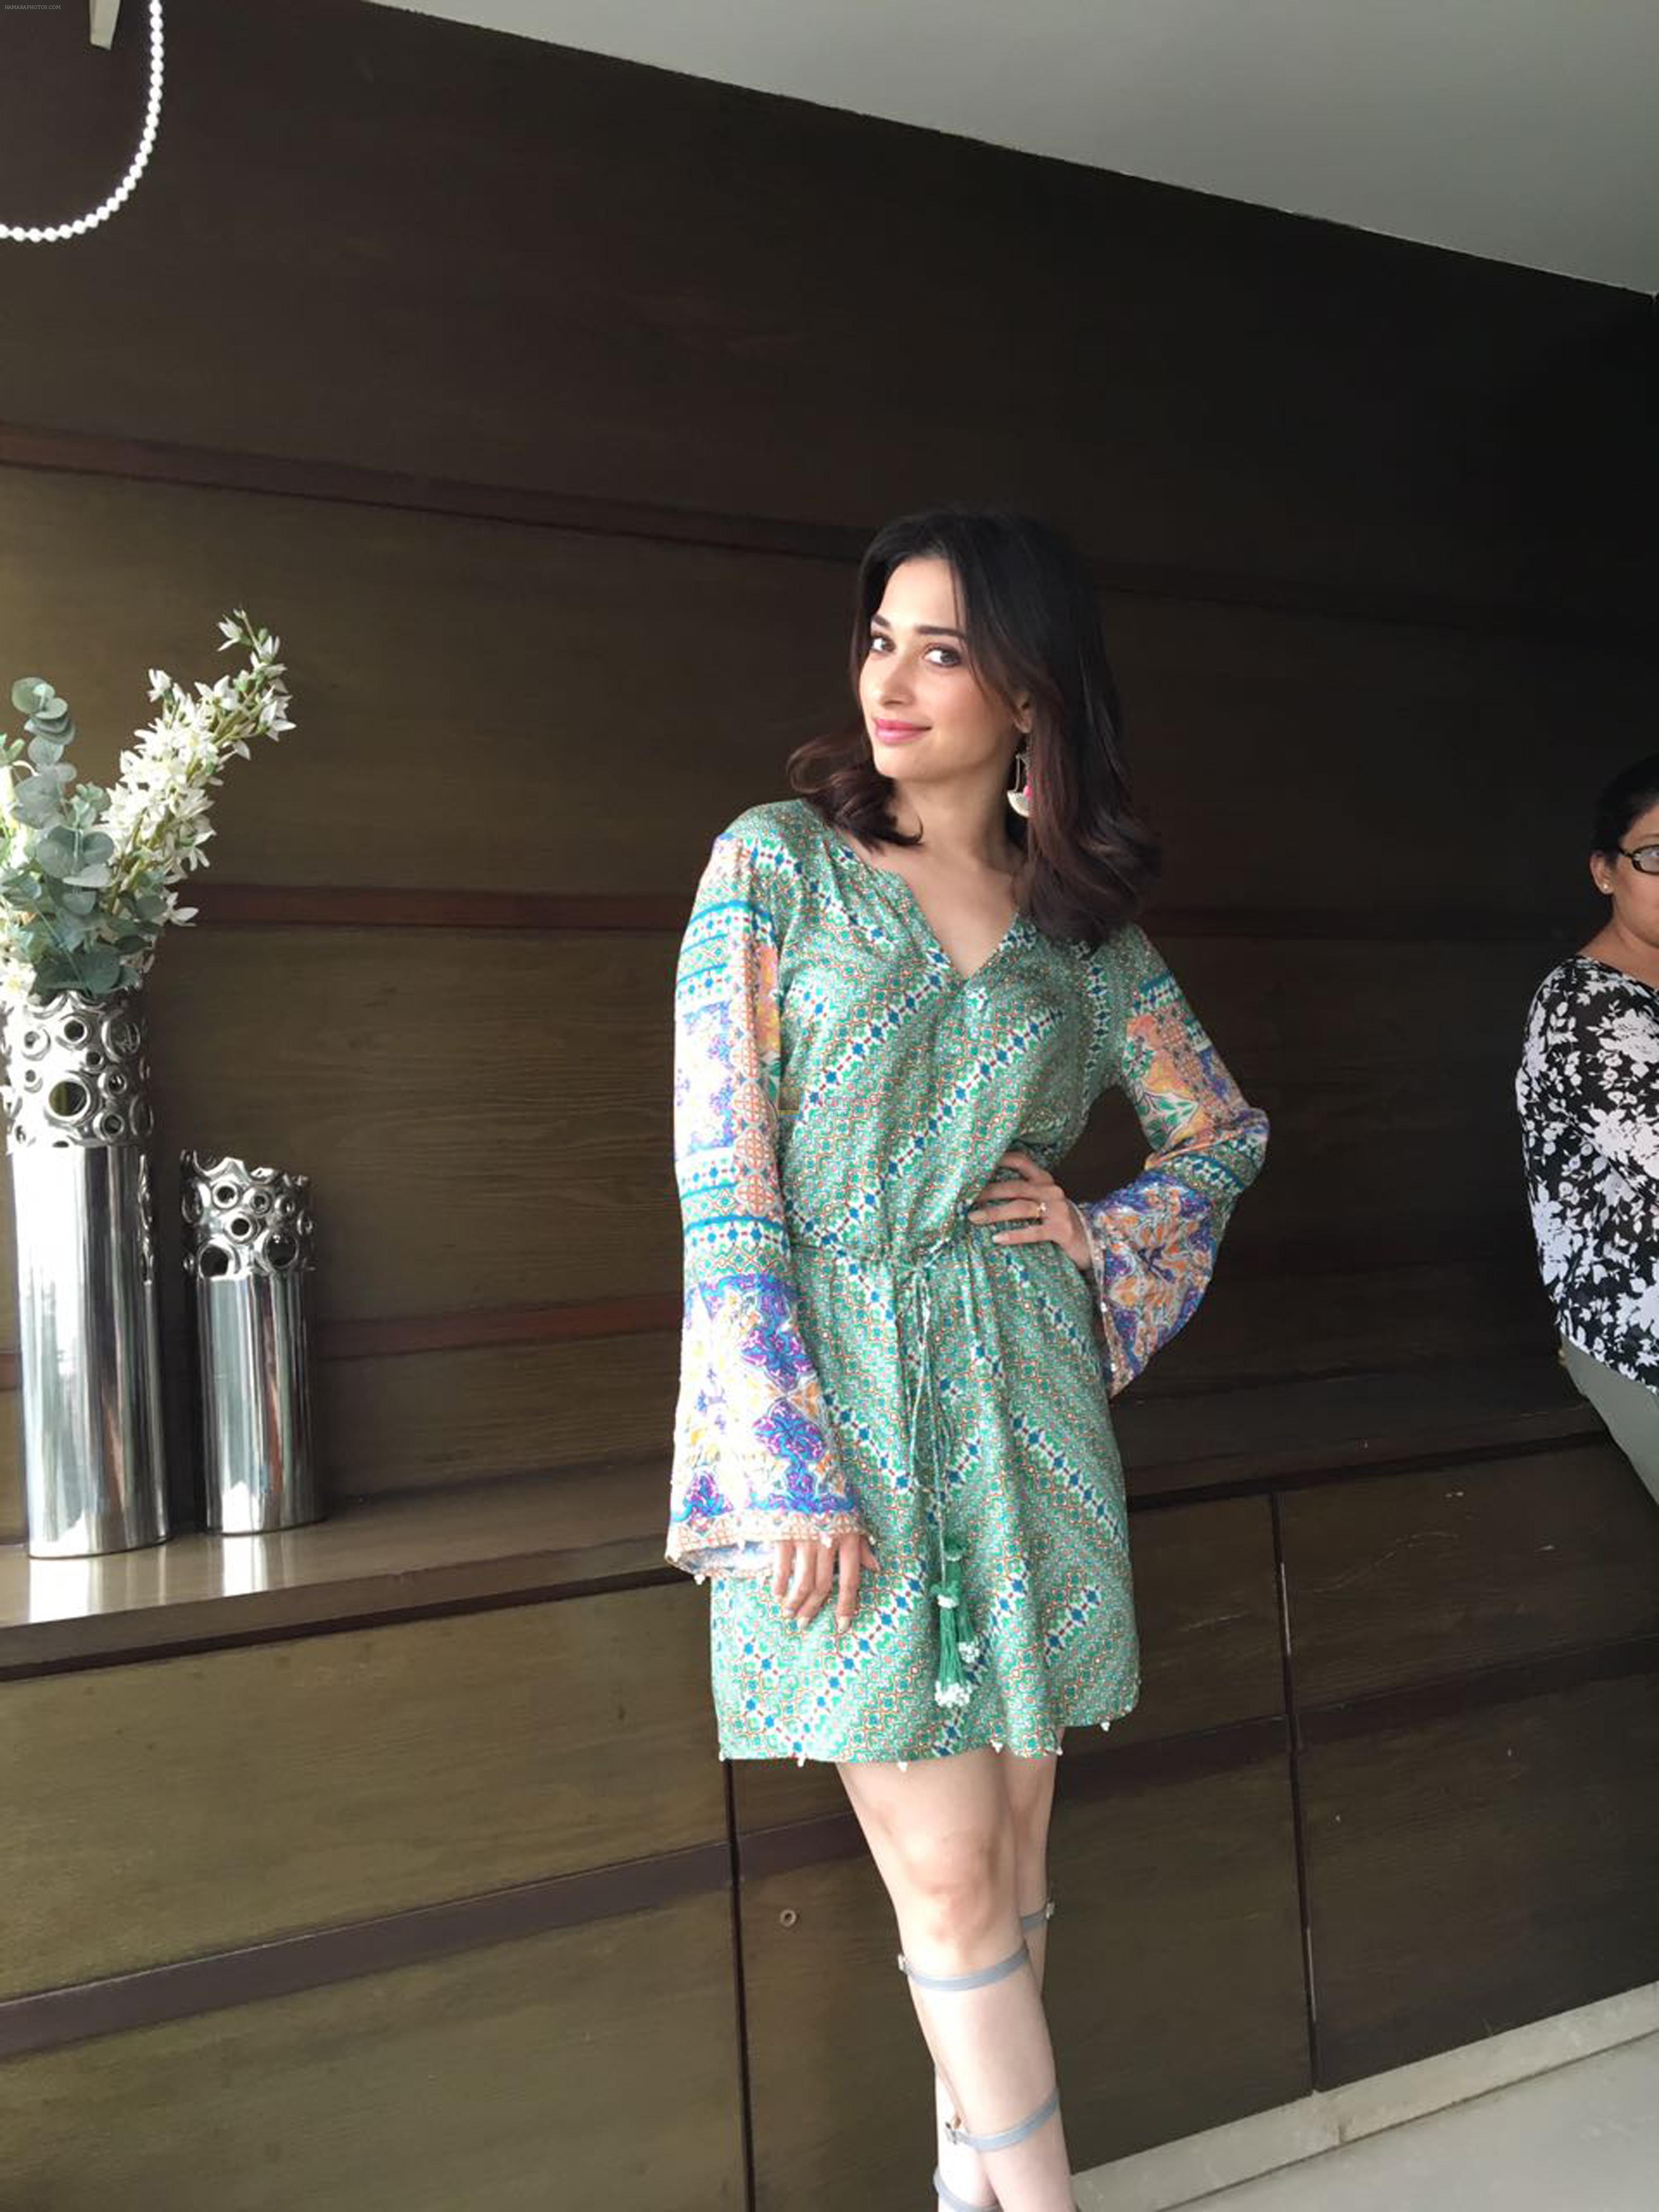 Tamannah Bhatia looking ravishing during the promotions of of her upcoming film Tutak Tutak Tutiya